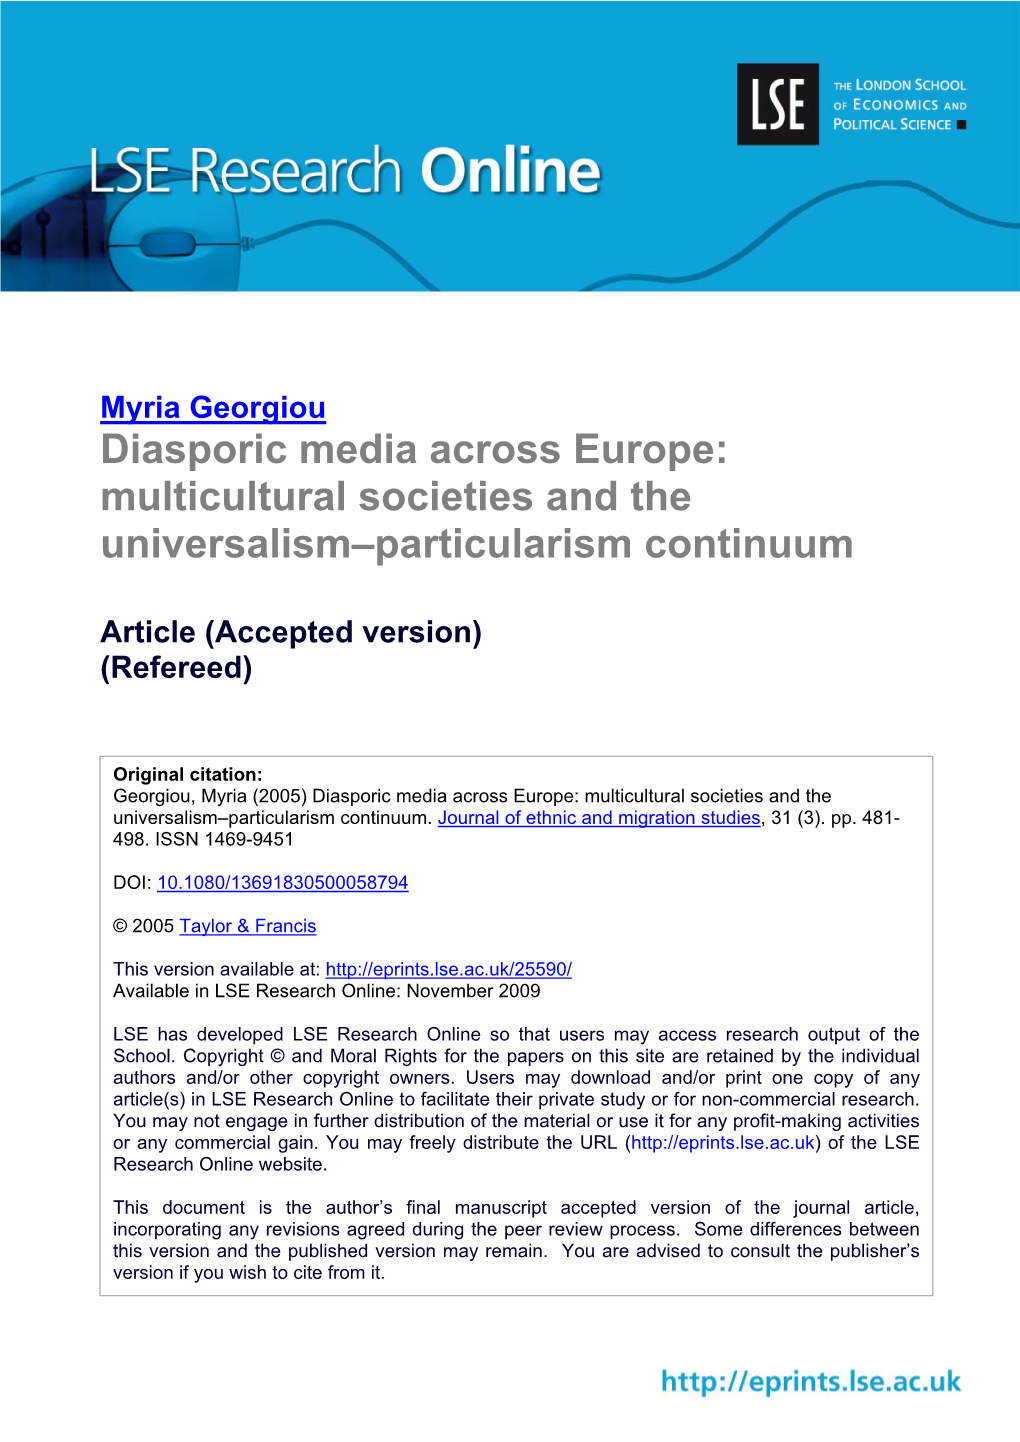 Diasporic Media Across Europe: Multicultural Societies and the Universalism–Particularism Continuum